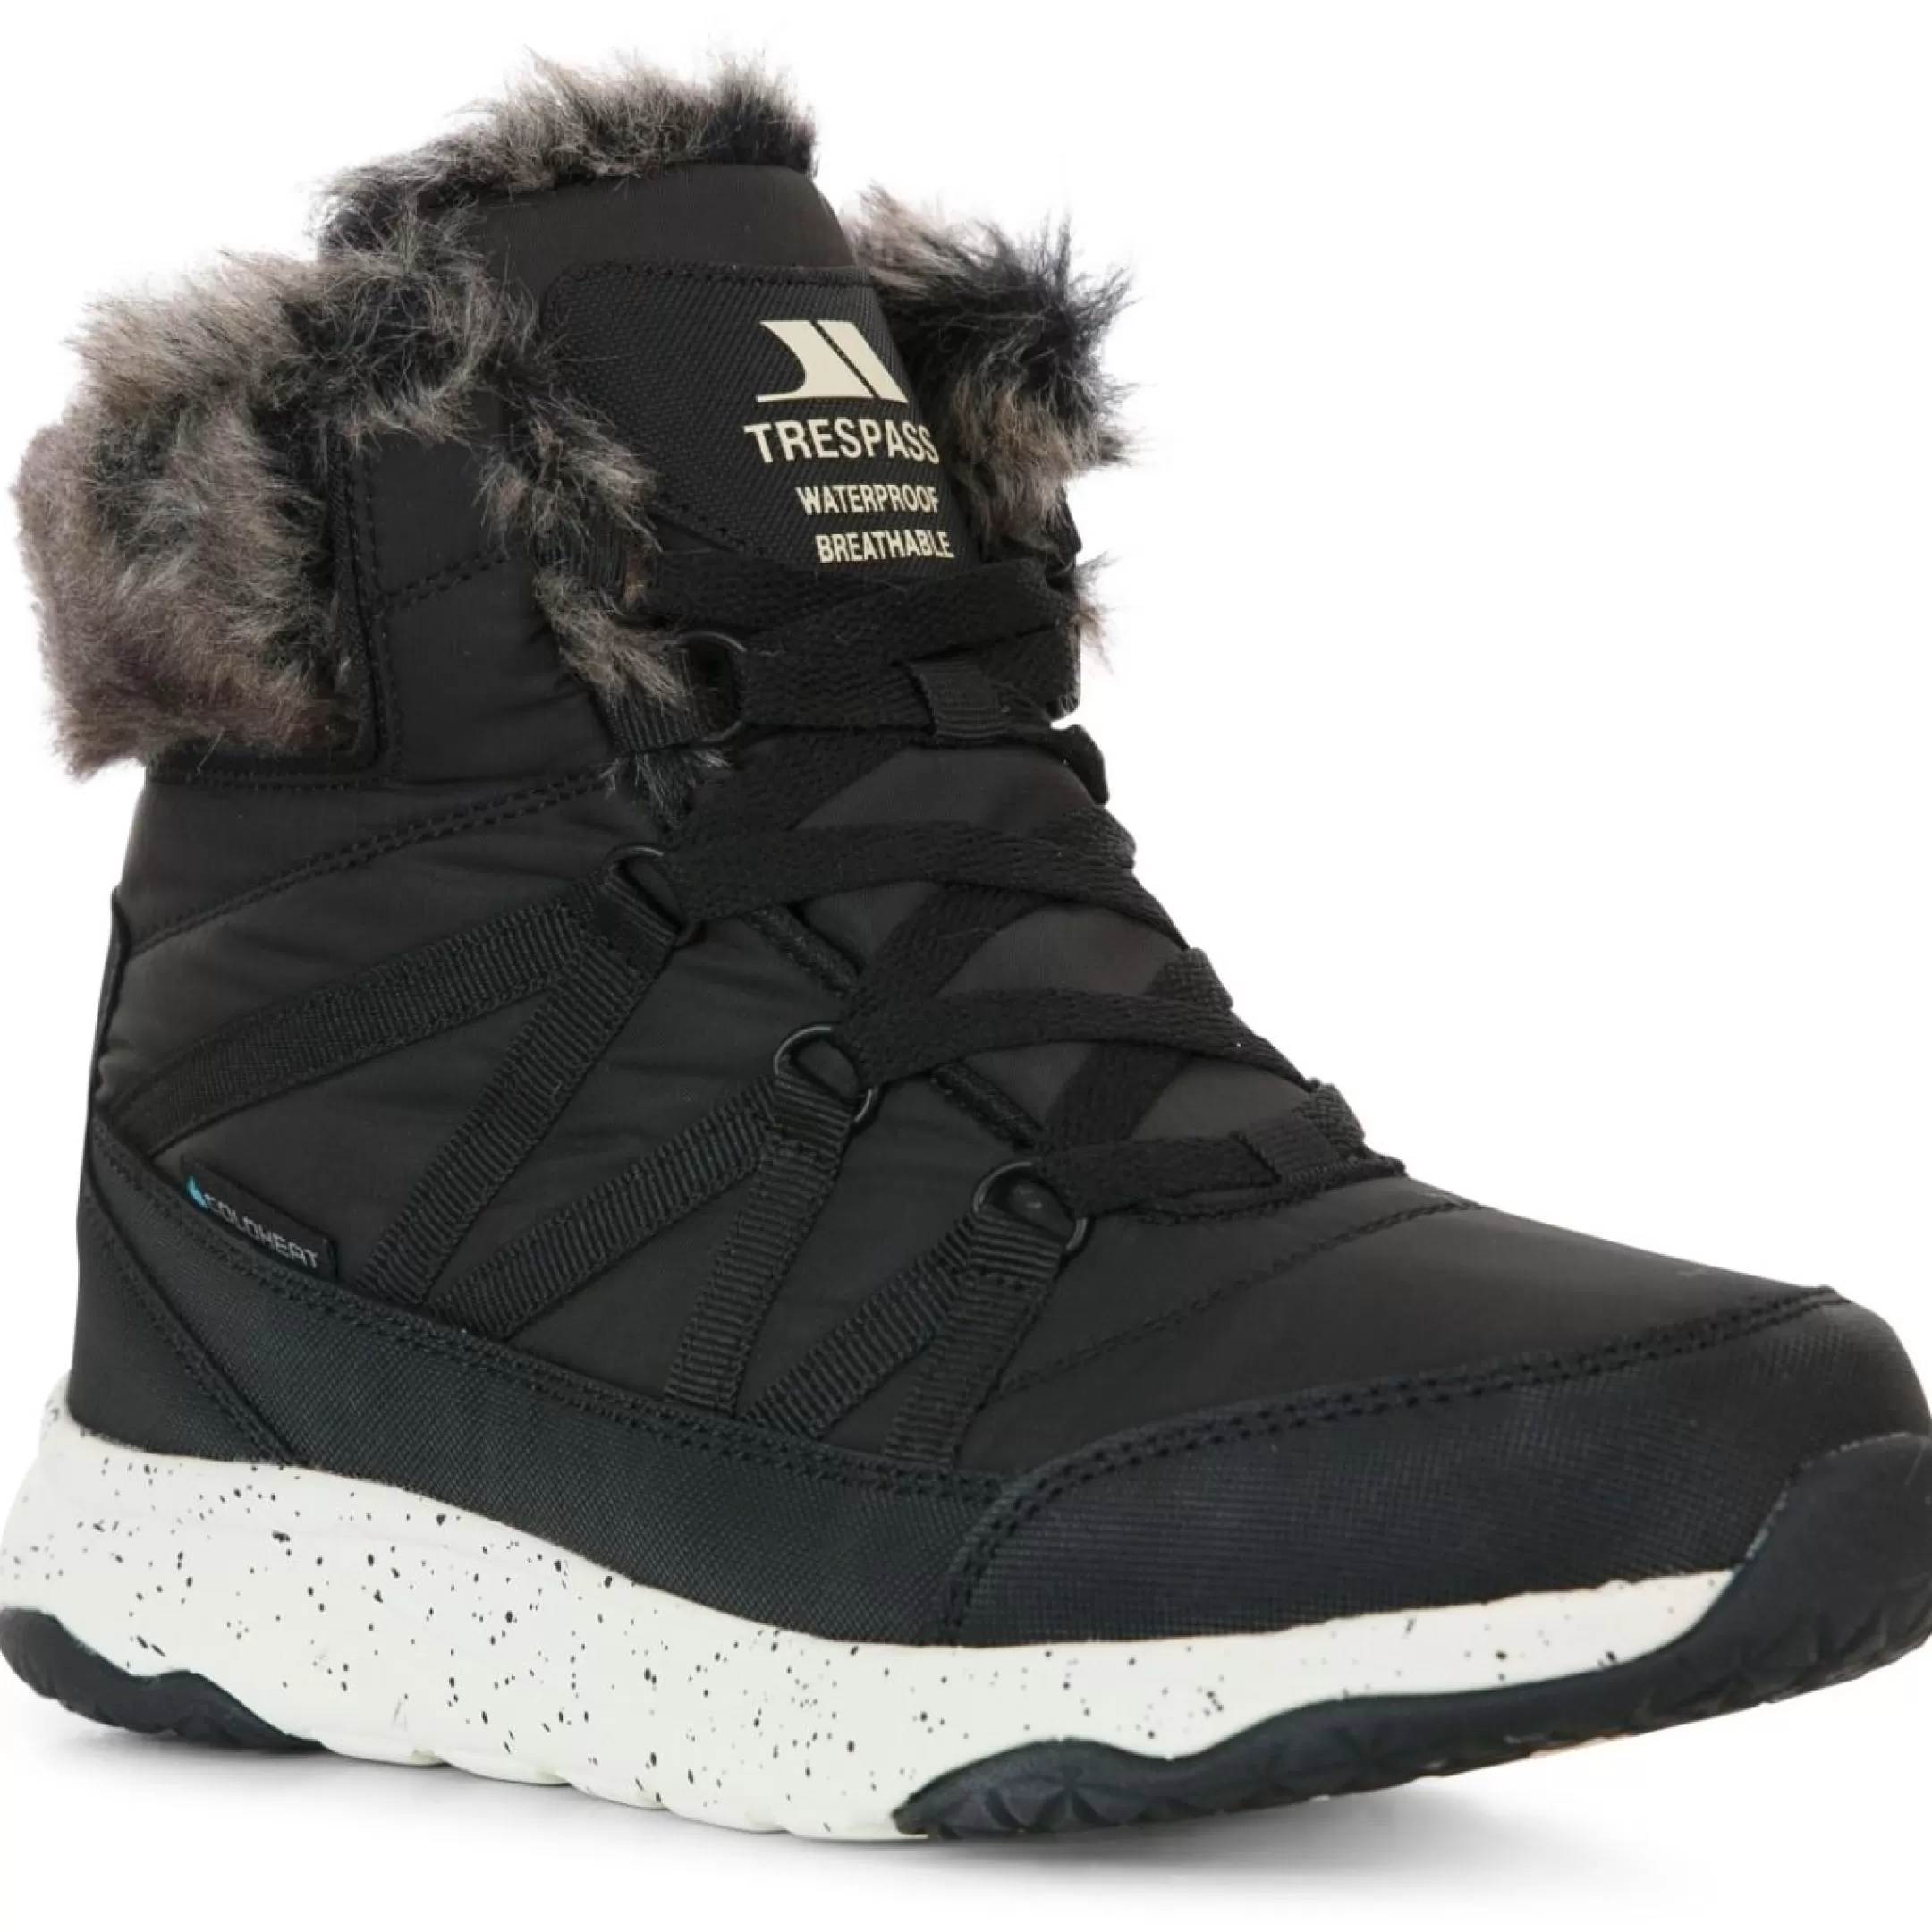 Womens Winter Boots Waterproof Insulated Kenna | Trespass Shop